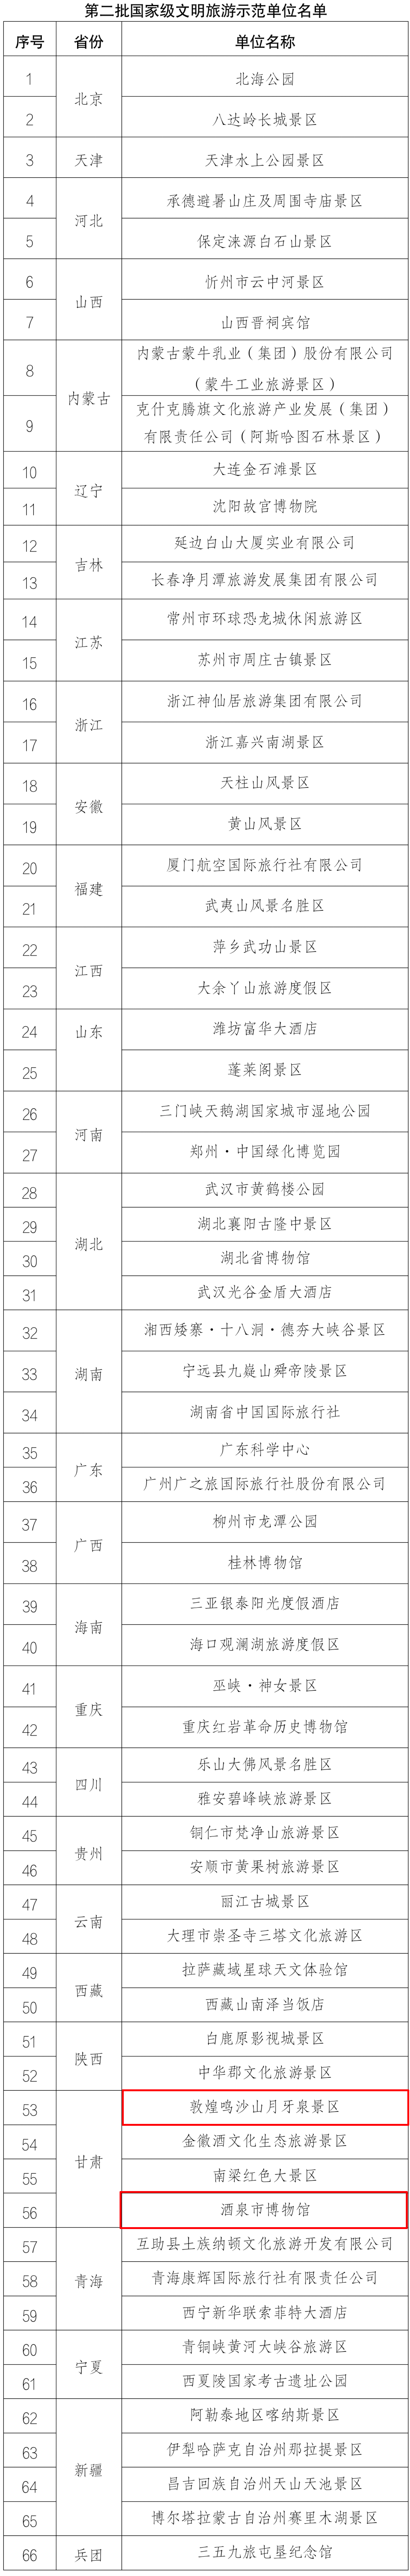 国家级名单！黑龙江入选17+10+1+1！_绿色_产品_制造